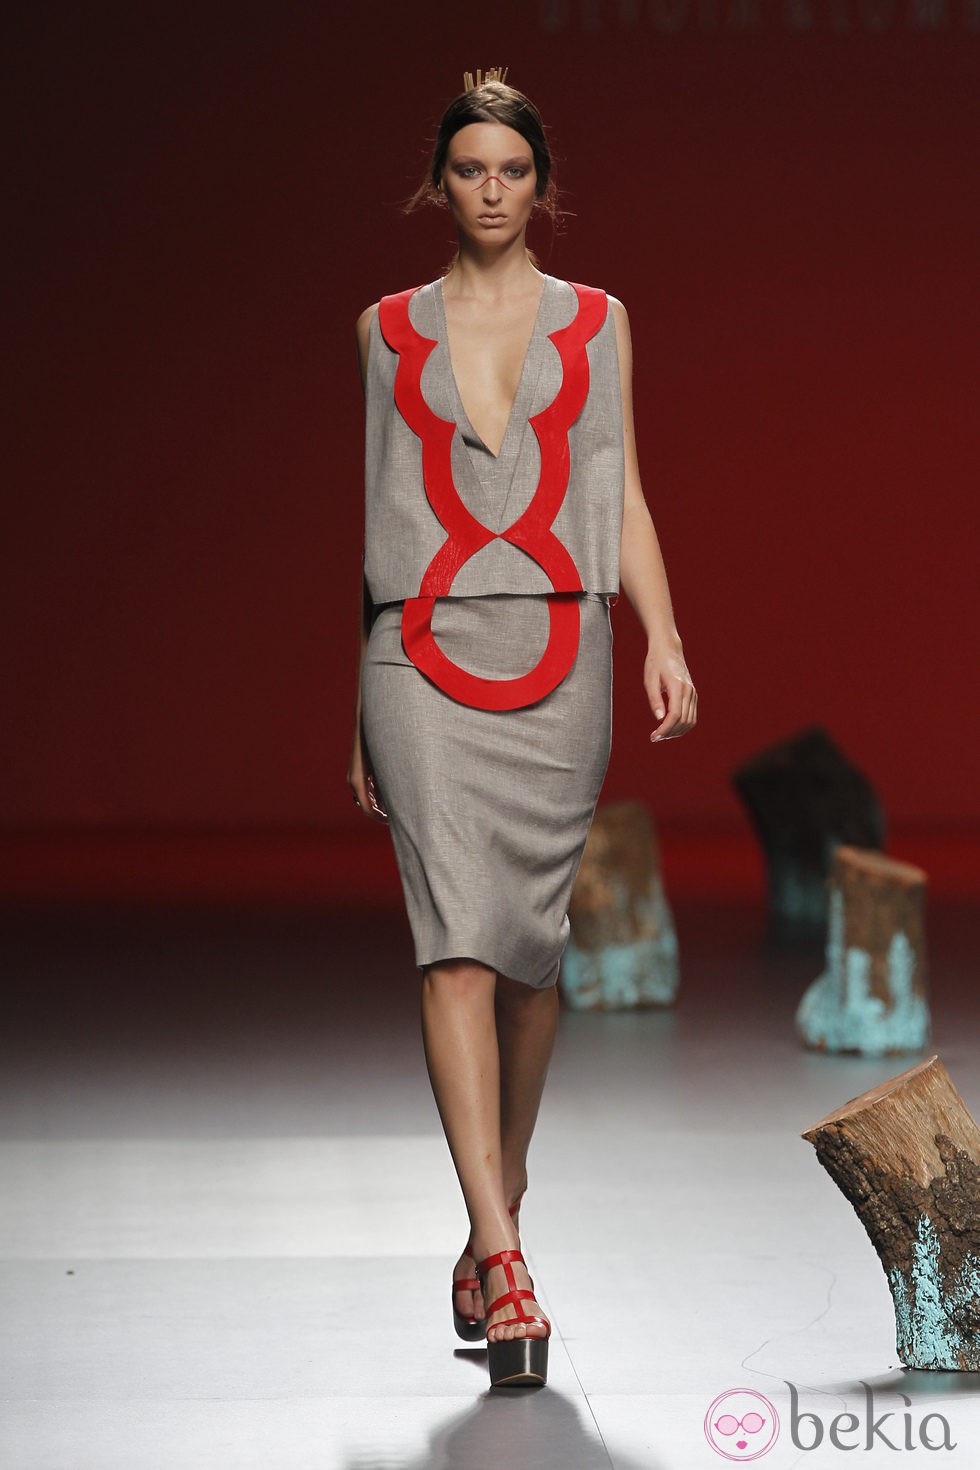 Vestido gris con detalles en rojo de Devota y Lomba, colección primavera 2012